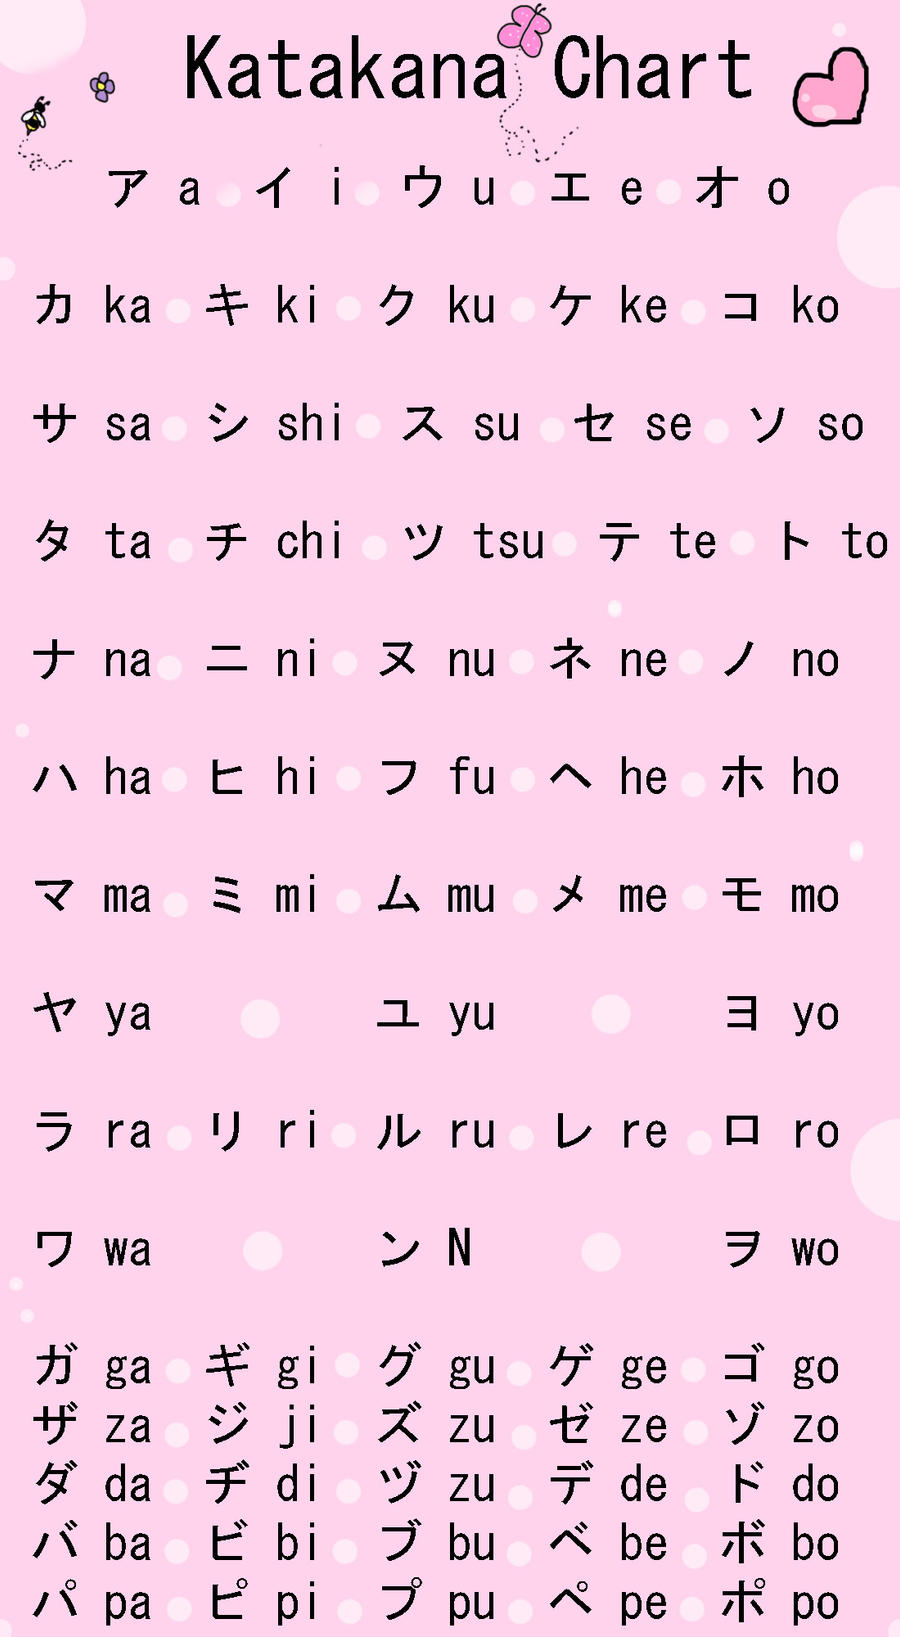 Bảng học chữ cái Katakana